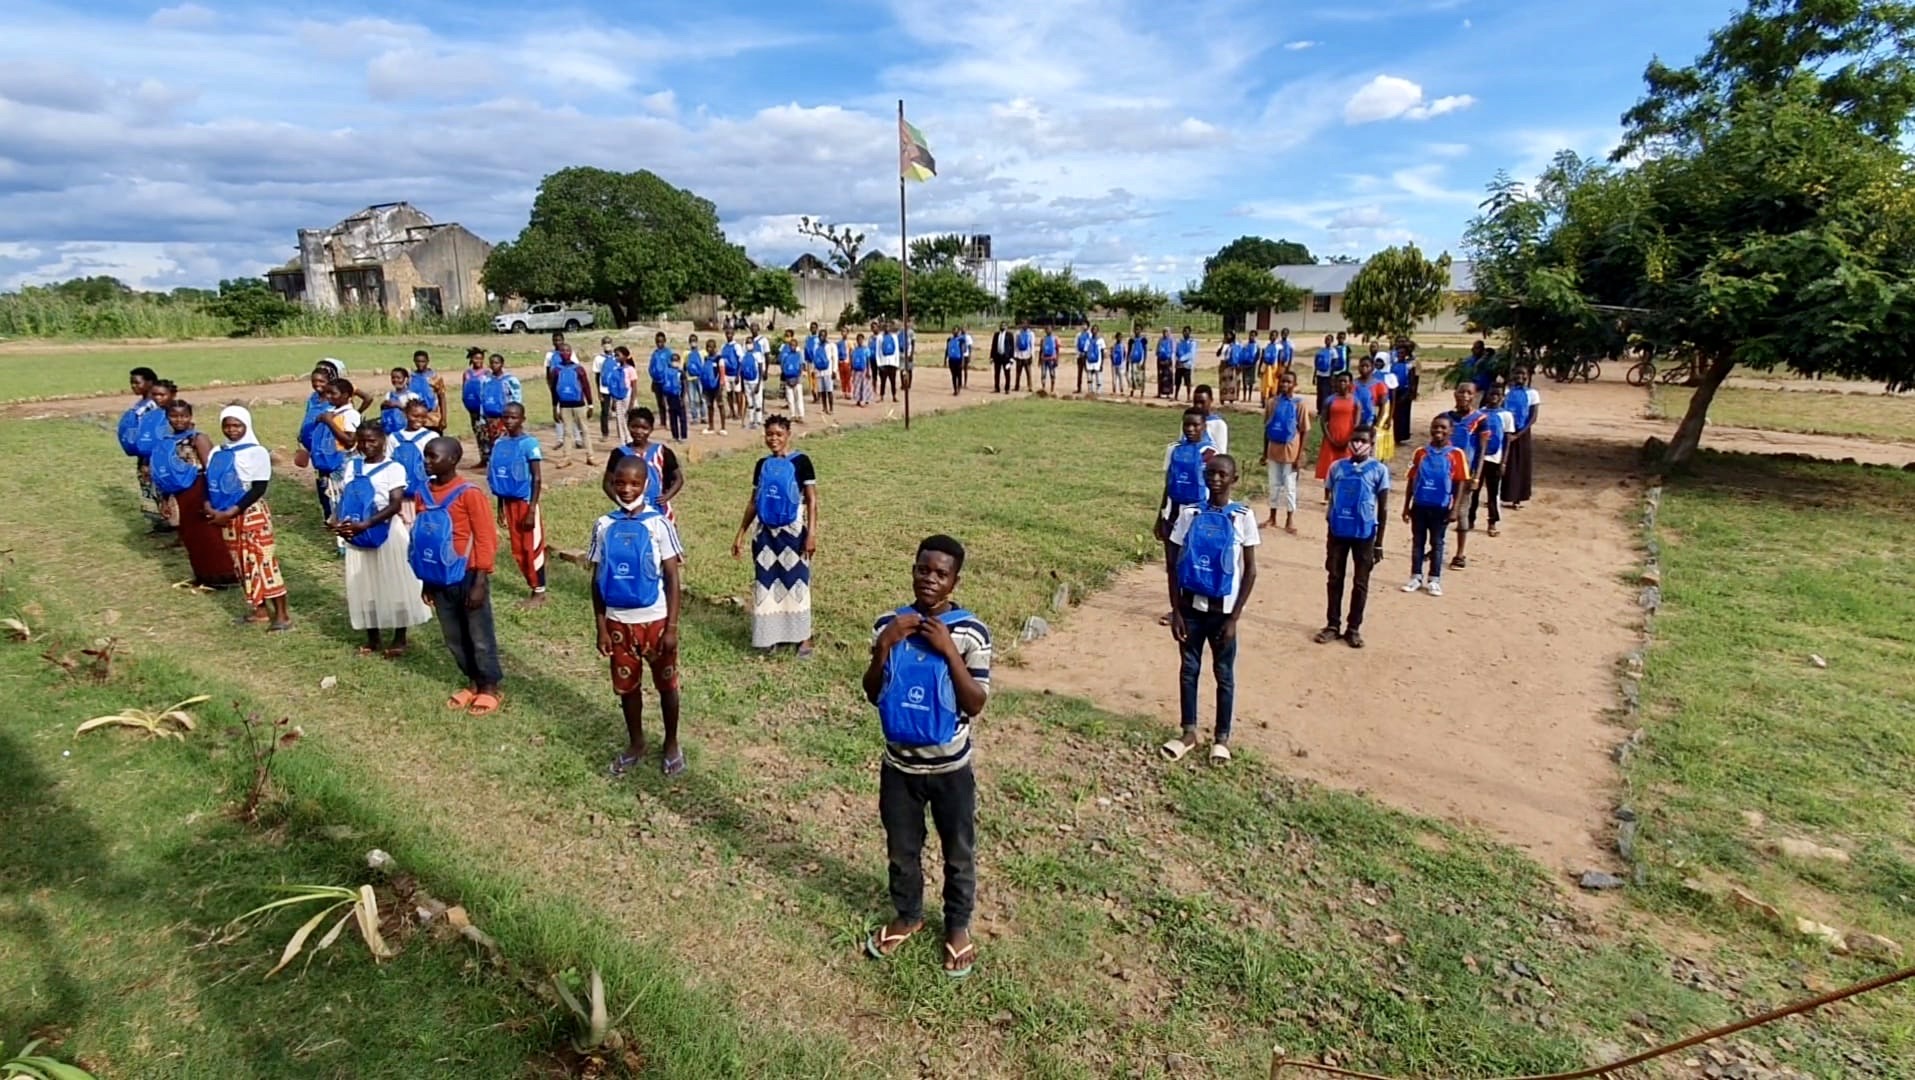 Regresso às aulas em Moçambique